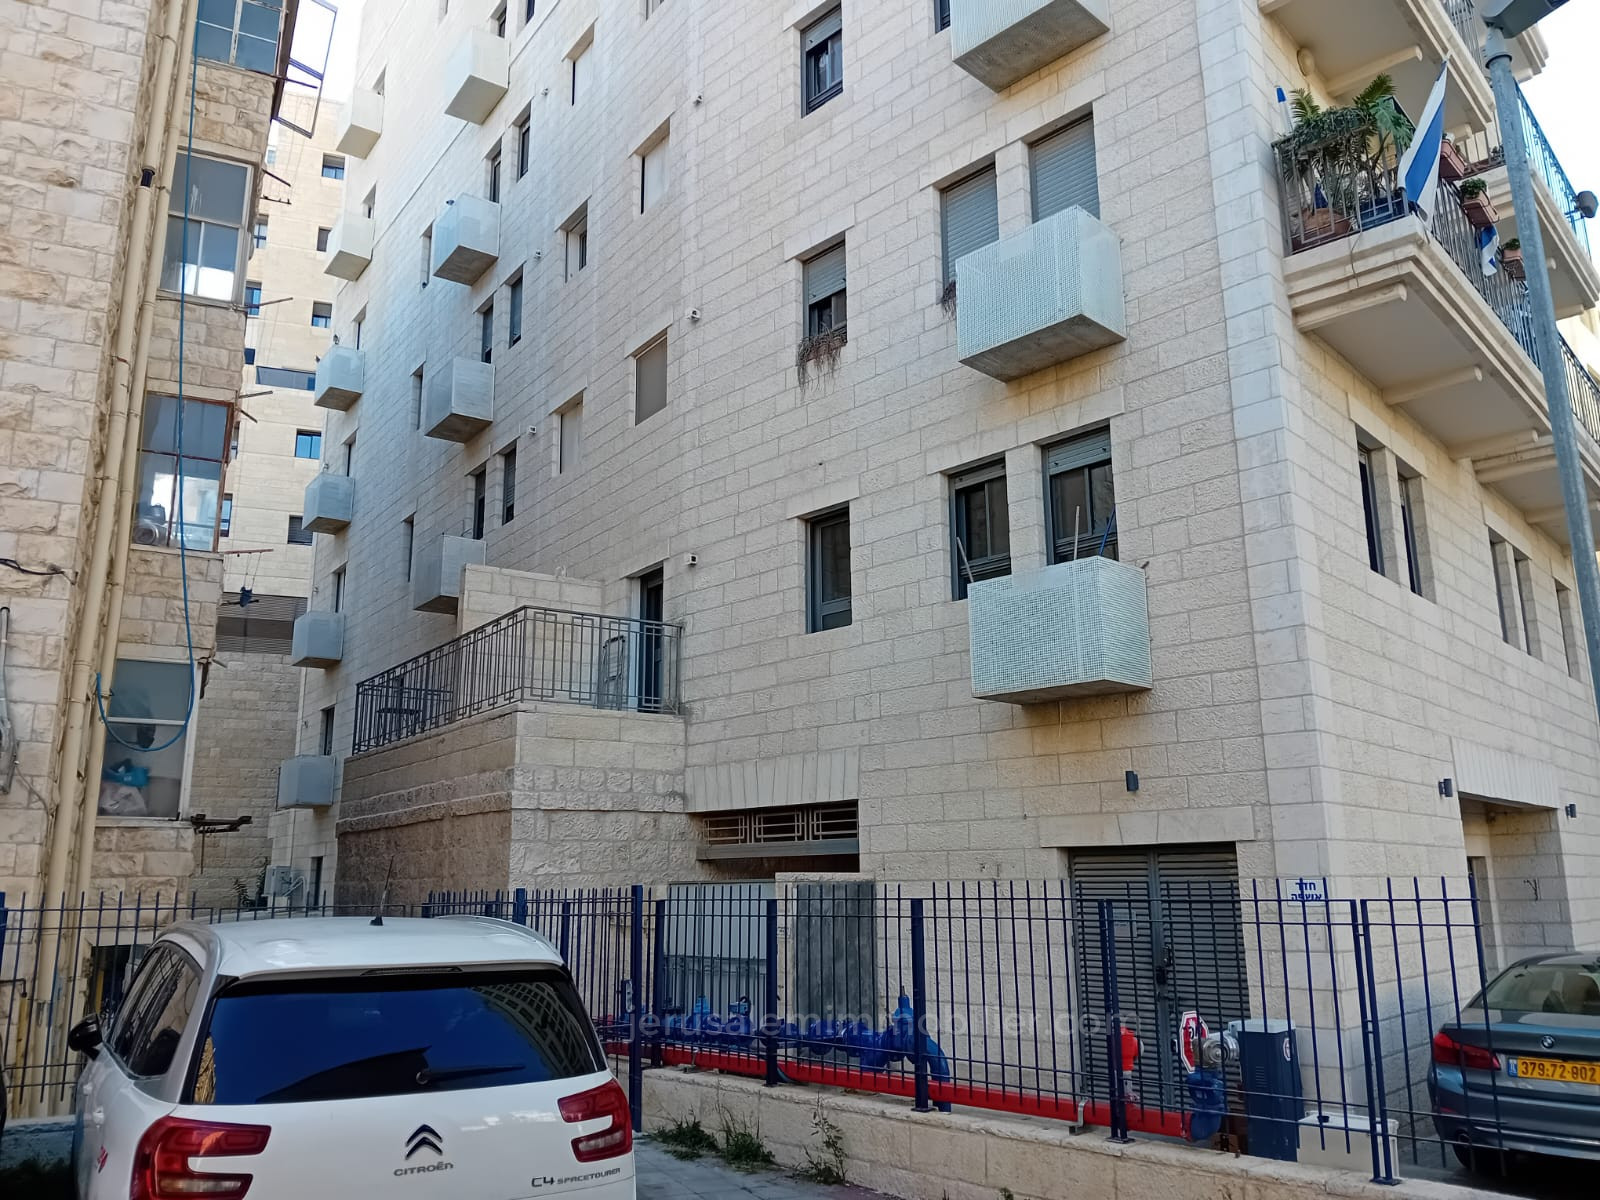 Departamento 2 habitaciones  Jerusalén Centro de la ciudad 226-IBL-1825